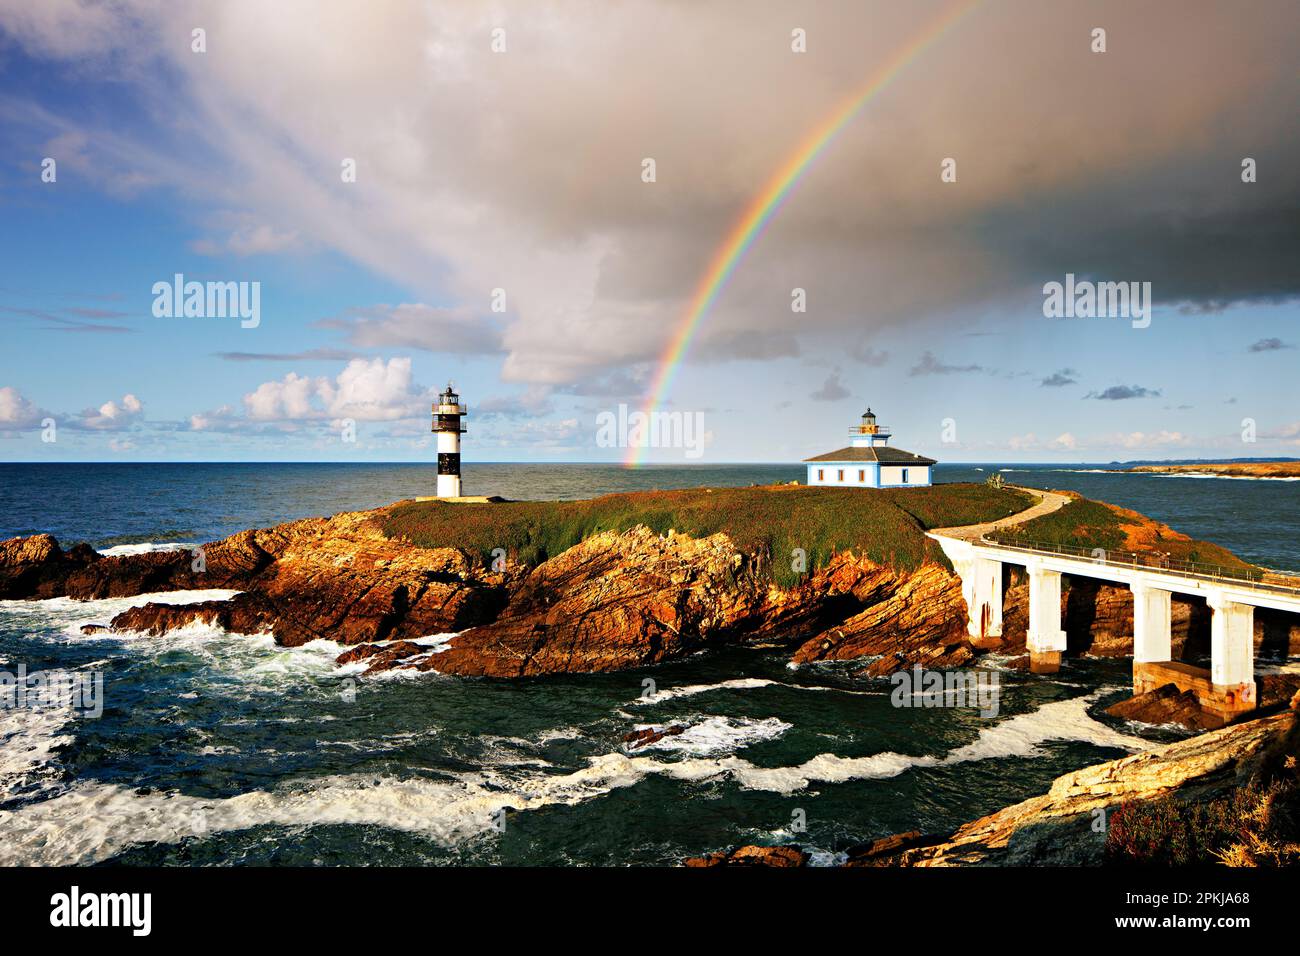 Rainbow, Lighthouse of Illa Pancha, Ribadeo, Galicia, Spain Stock Photo